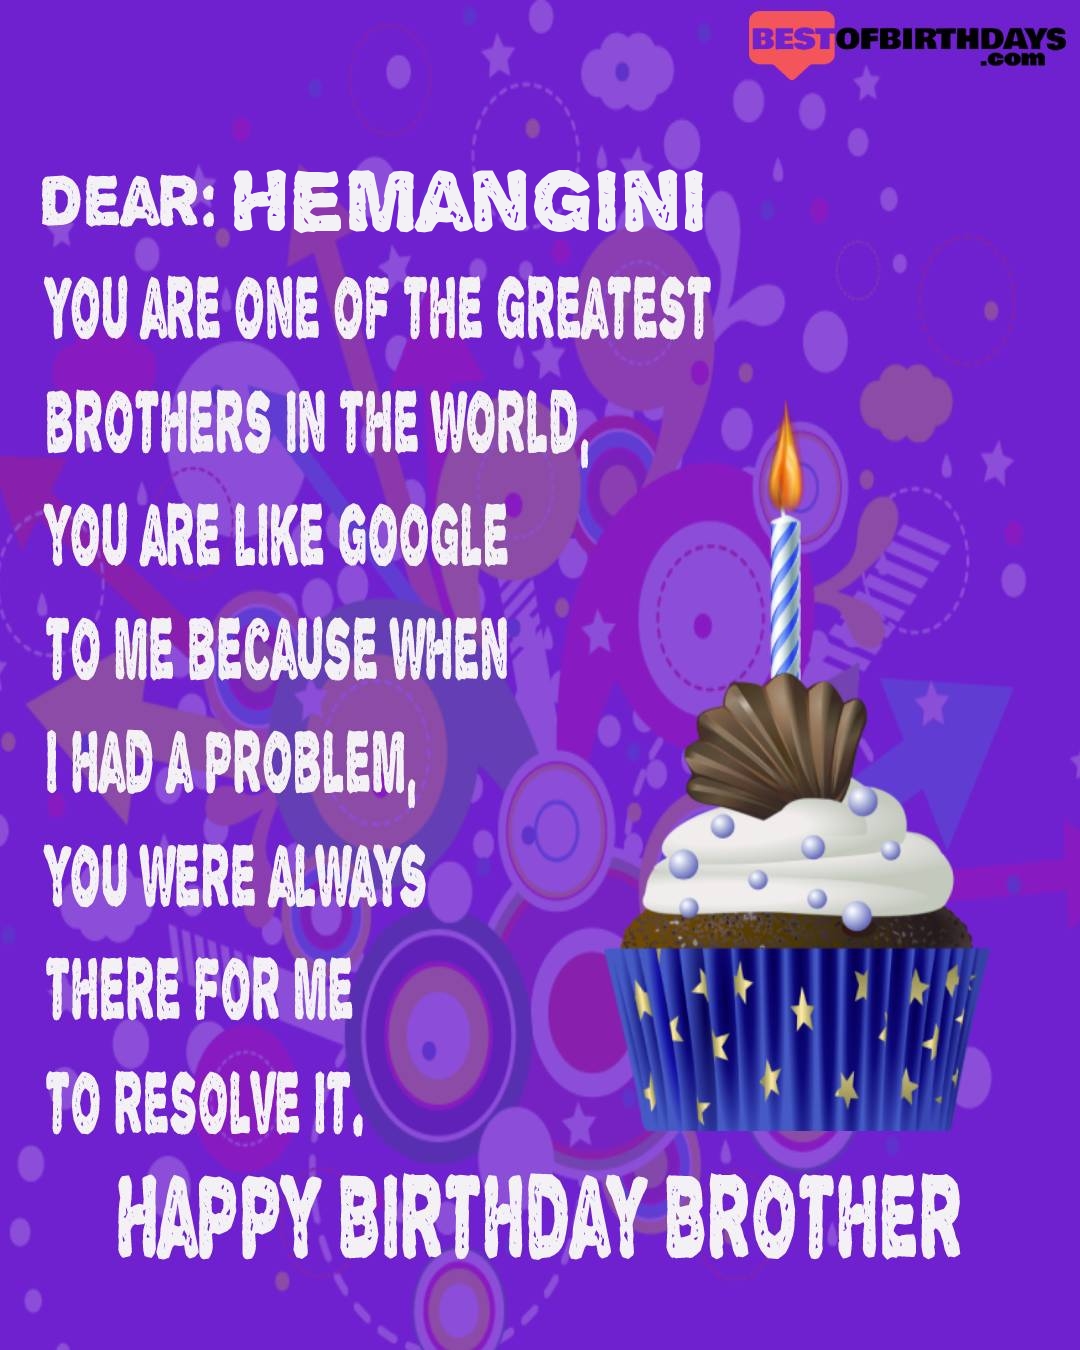 Happy birthday hemangini bhai brother bro